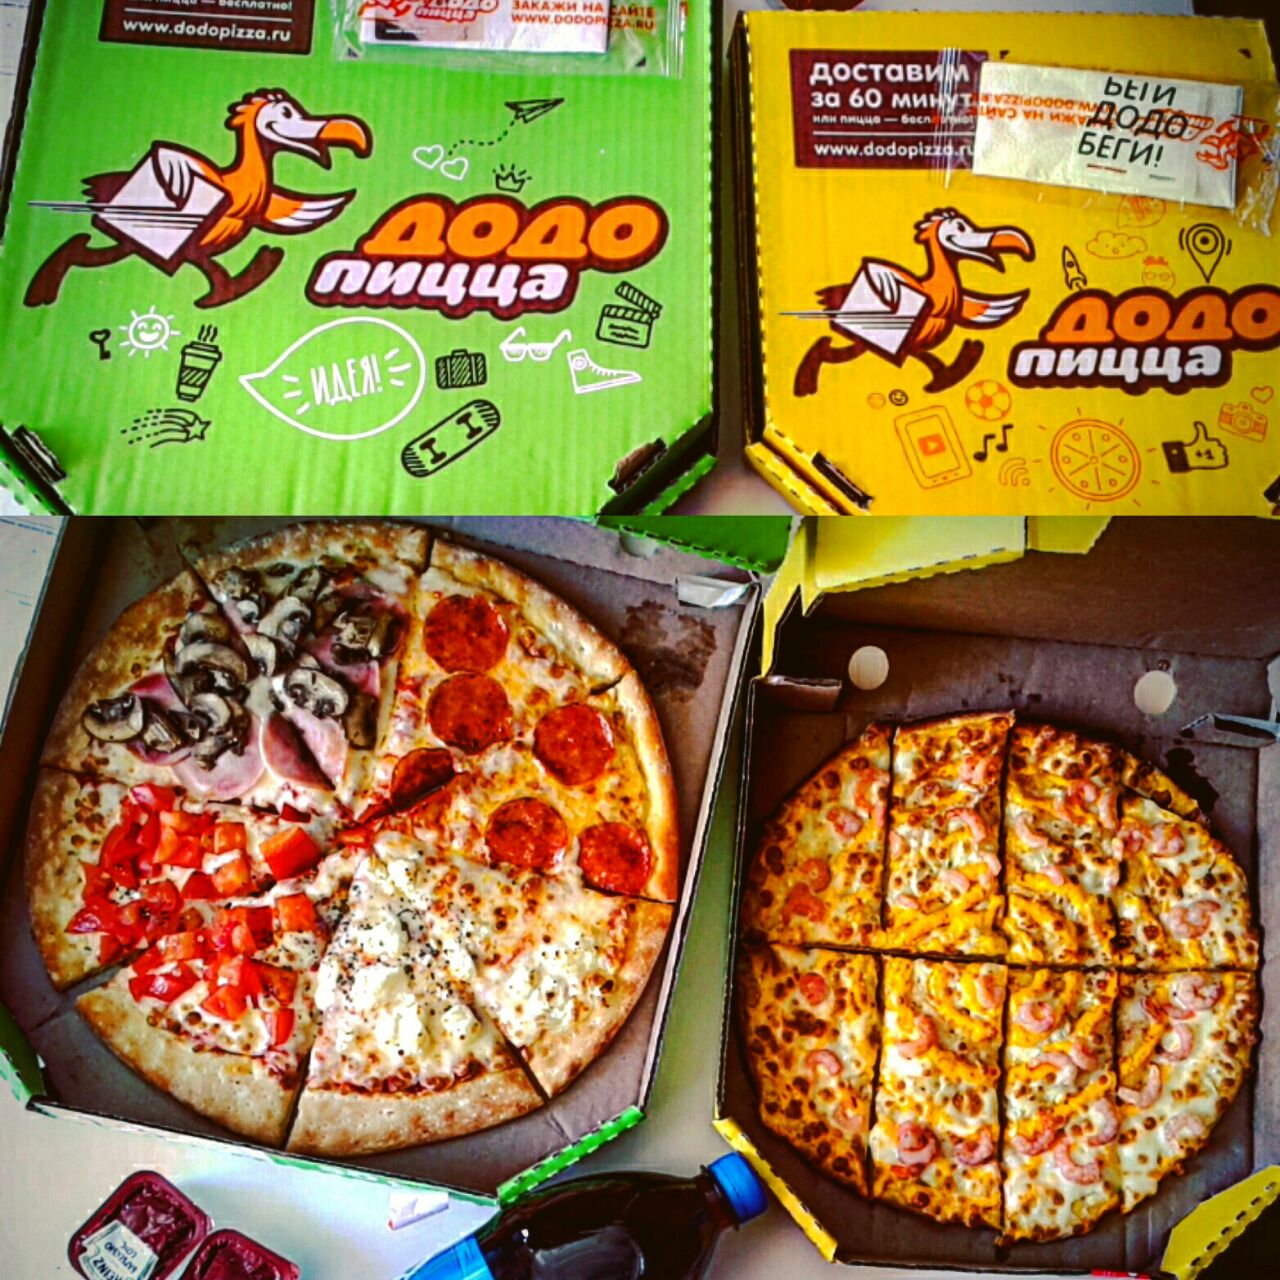 додо четыре сыра отзывы пицца фото 115